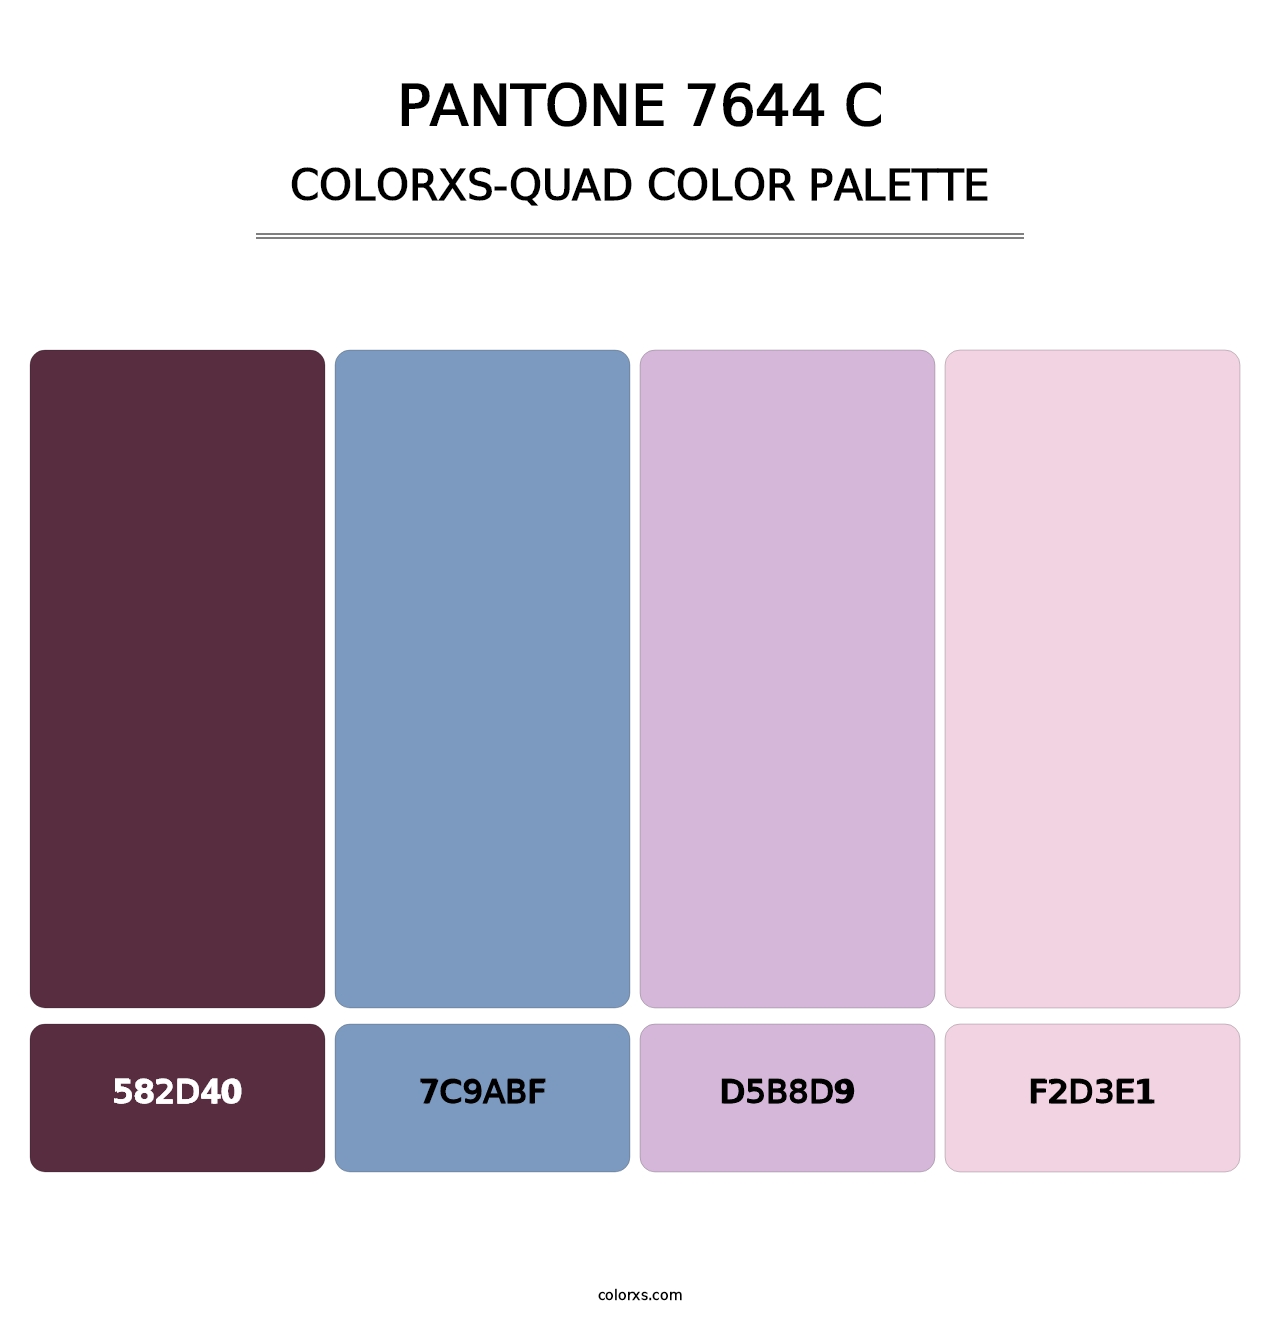 PANTONE 7644 C - Colorxs Quad Palette